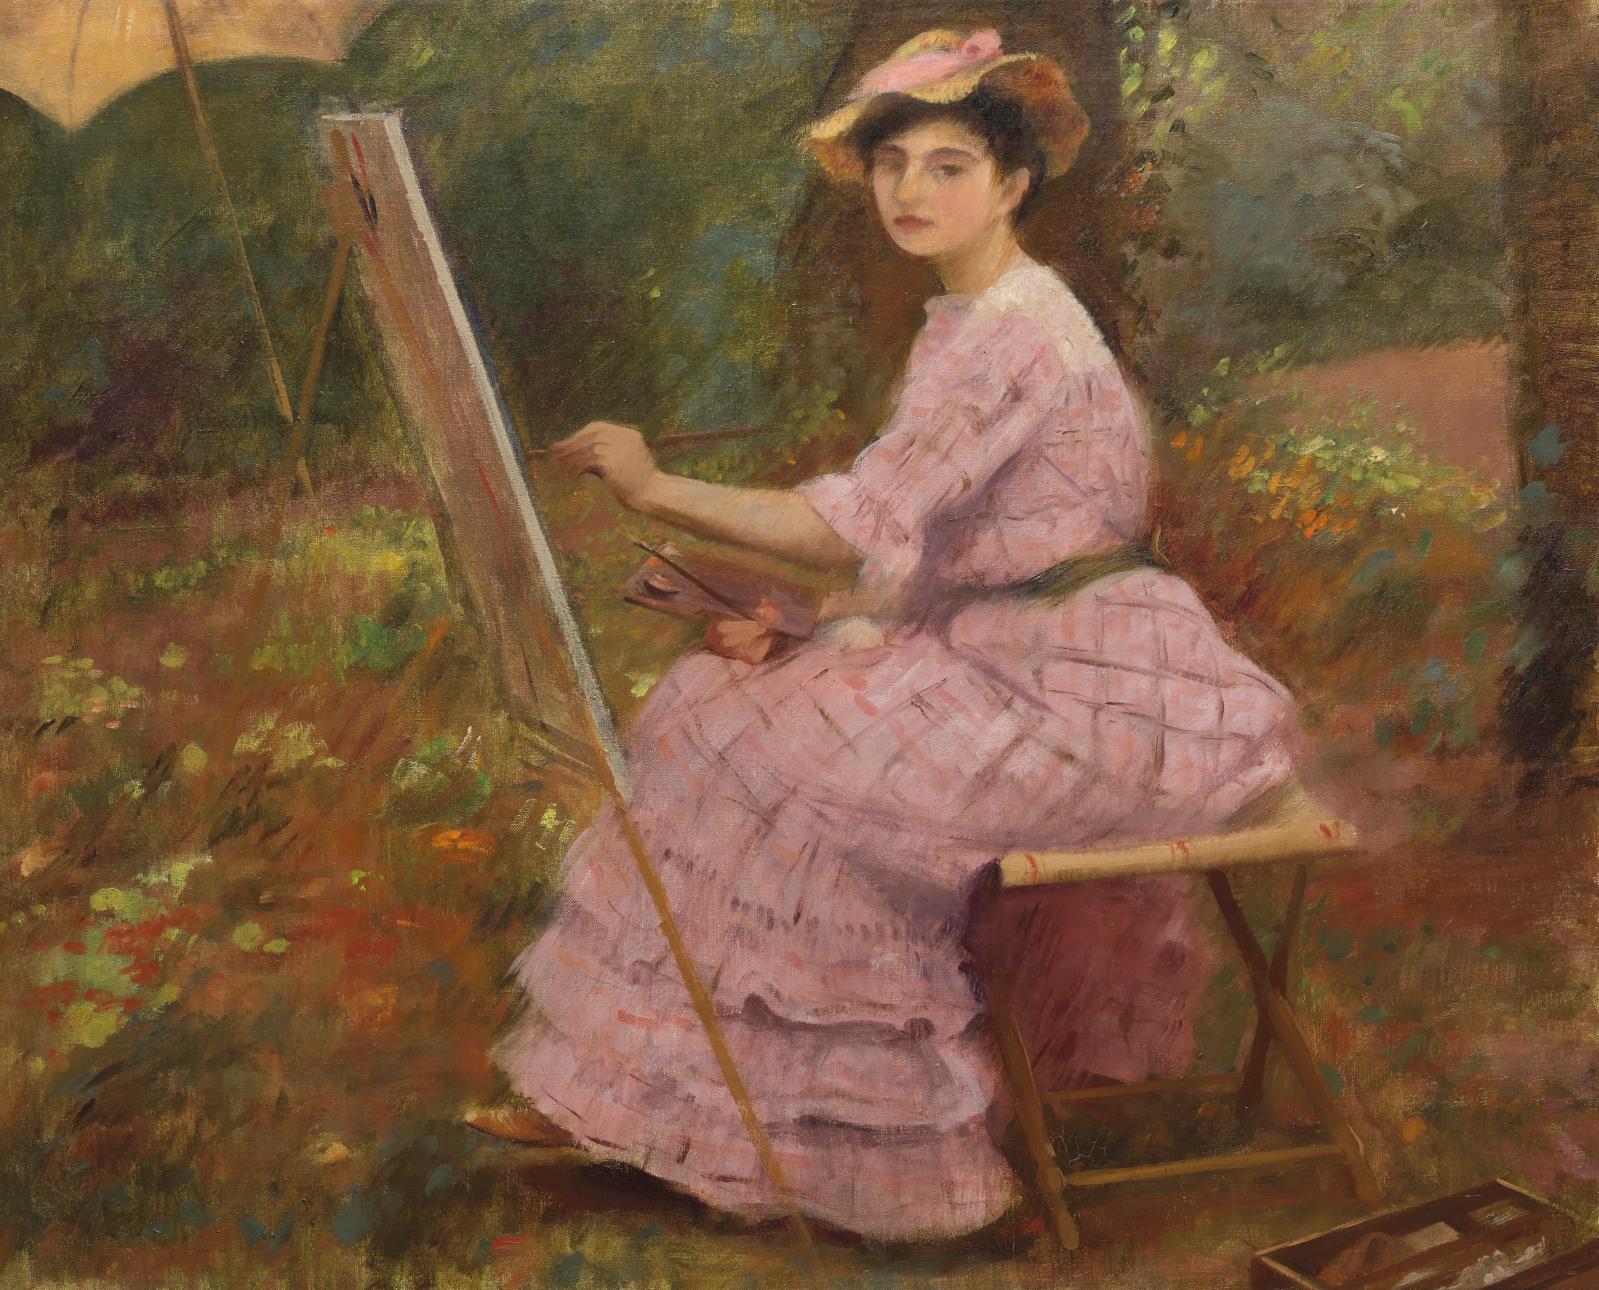 Ernest Rouart, Julie Manet peignant, 1905, huile sur toile, 70 x 82,7 cm. collection particulière